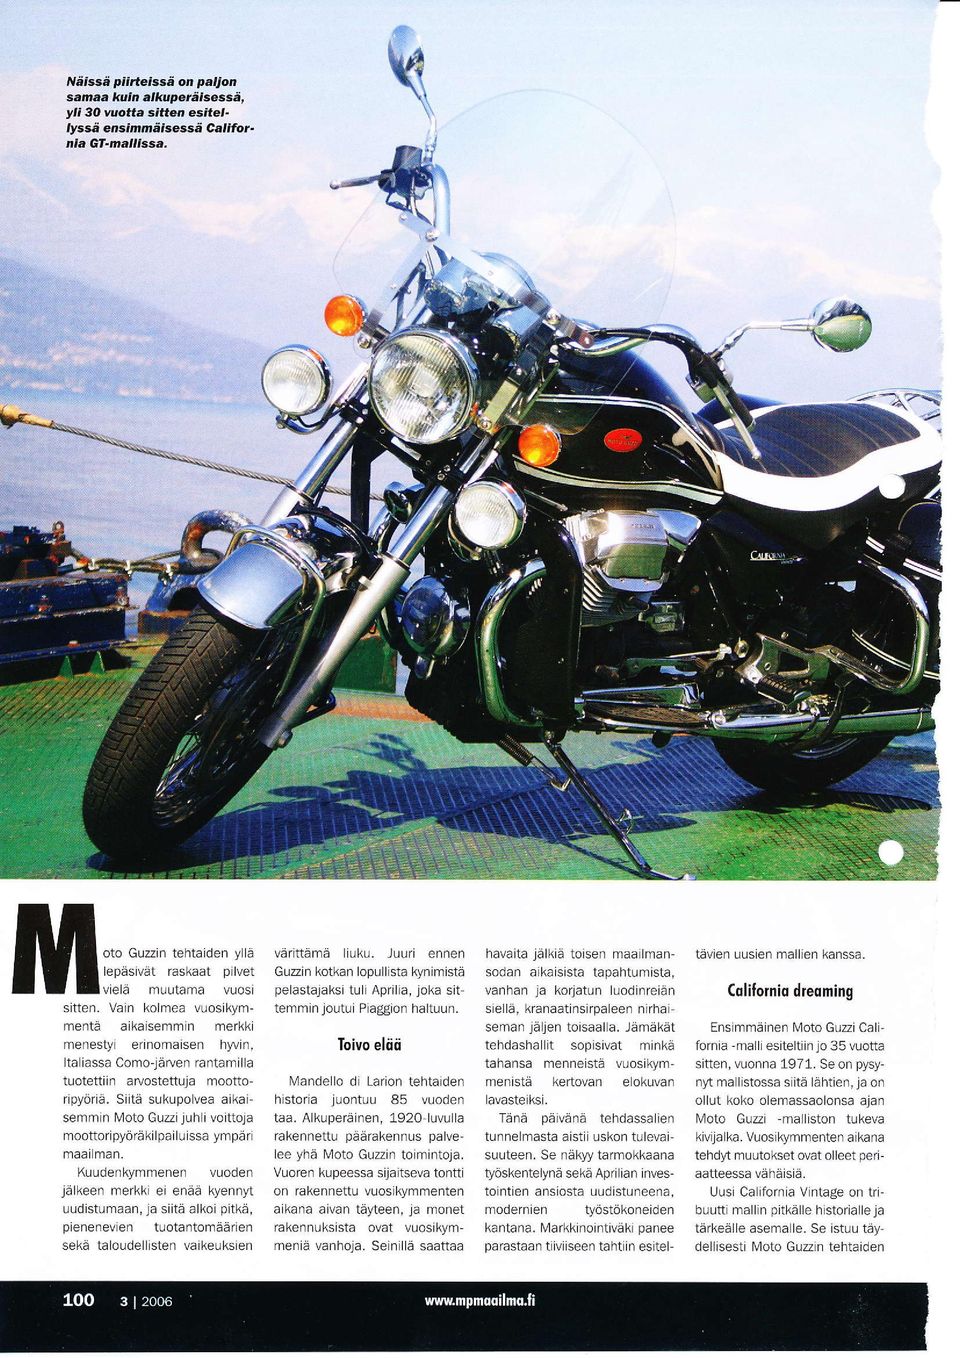 Vain kolmea vuosikymmentä a kaisemn-r n merkki menesty erinomaisen hwln, Ita iassa Como-Järven rantamilla tuotettrn arvostettuja moottor pyöriä.